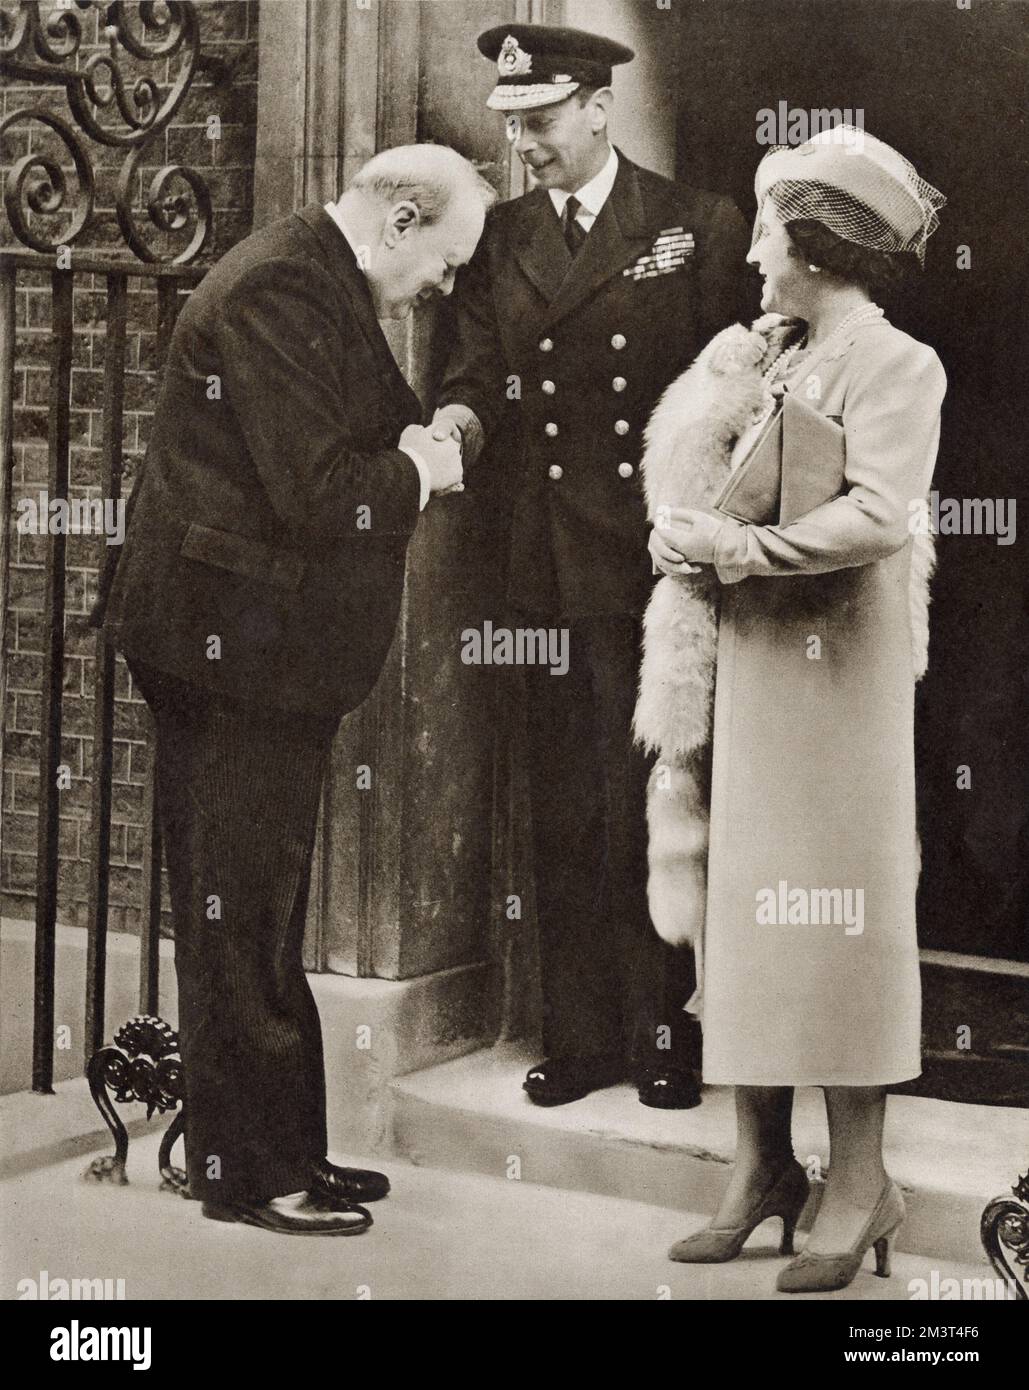 Los tres grandes del reino. El primer ministro Winston Churchill dijo Adiós al rey Jorge VI y la reina Isabel, cuando salieron del 10 de la calle Downing después de un almuerzo privado. Foto de stock